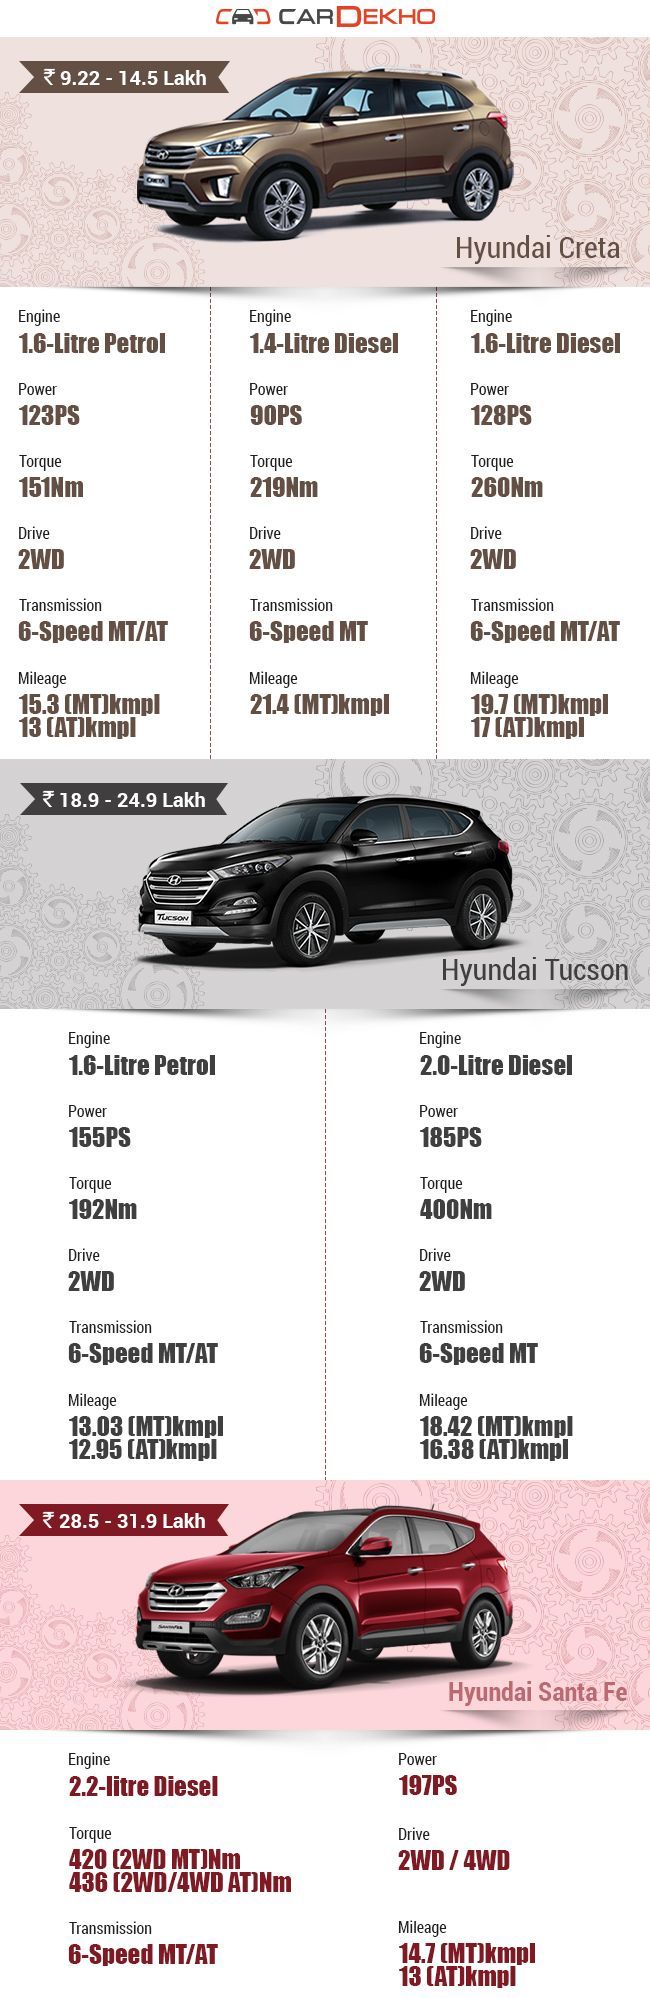 Hyundai Creta Vs Hyundai Tucson Vs Hyundai Santa Fe - What's different?